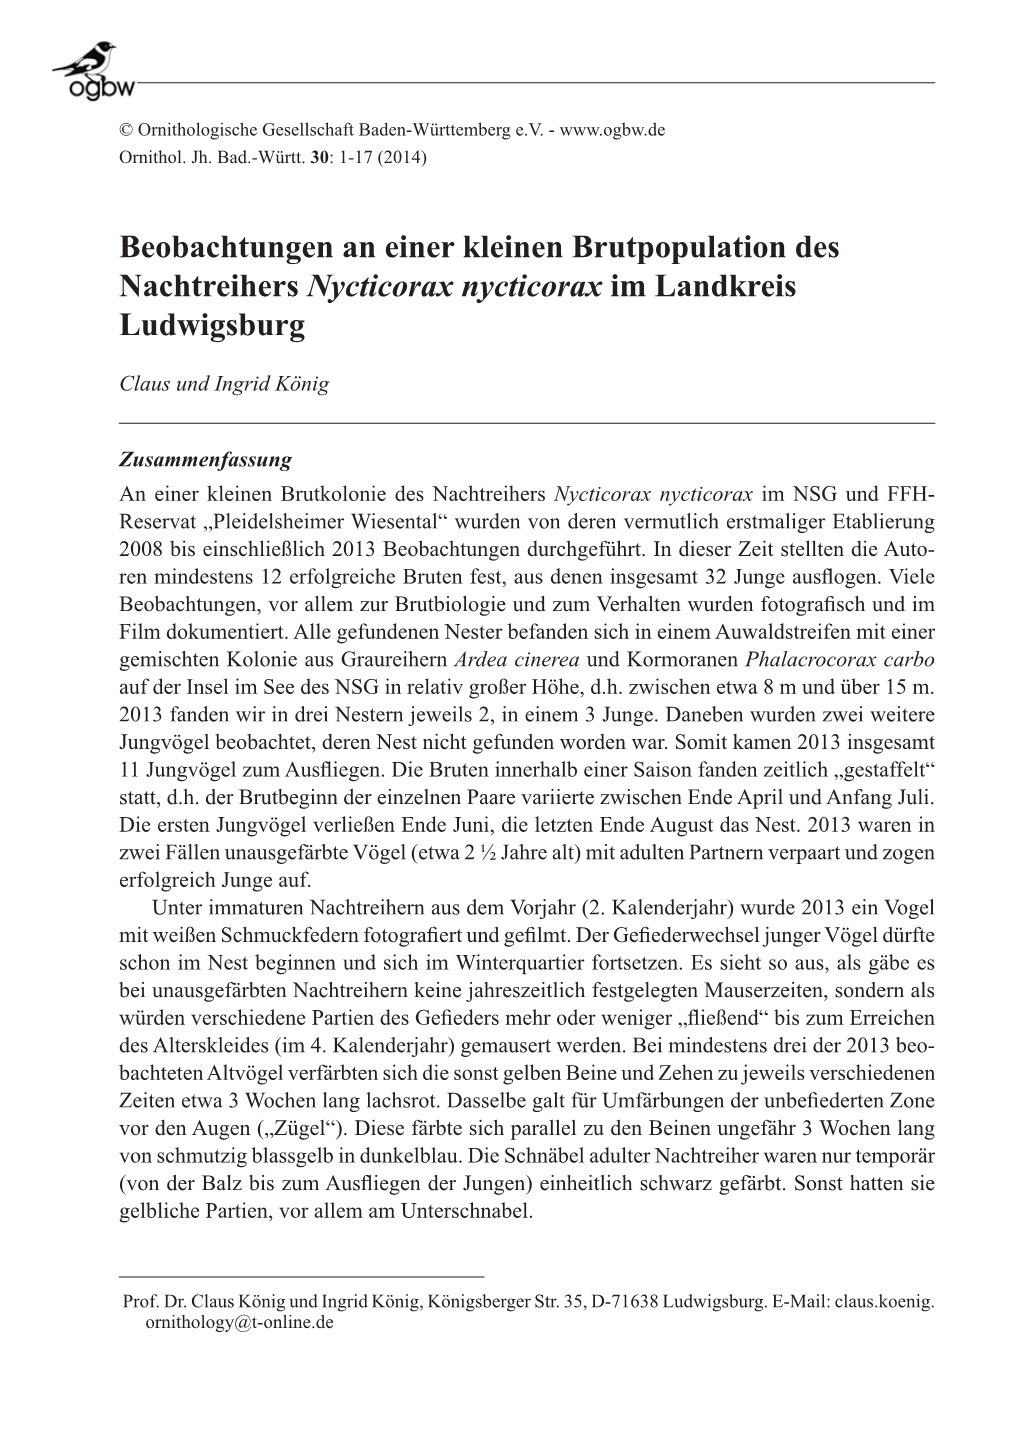 Beobachtungen an Einer Kleinen Brutpopulation Des Nachtreihers Nycticorax Nycticorax Im Landkreis Ludwigsburg